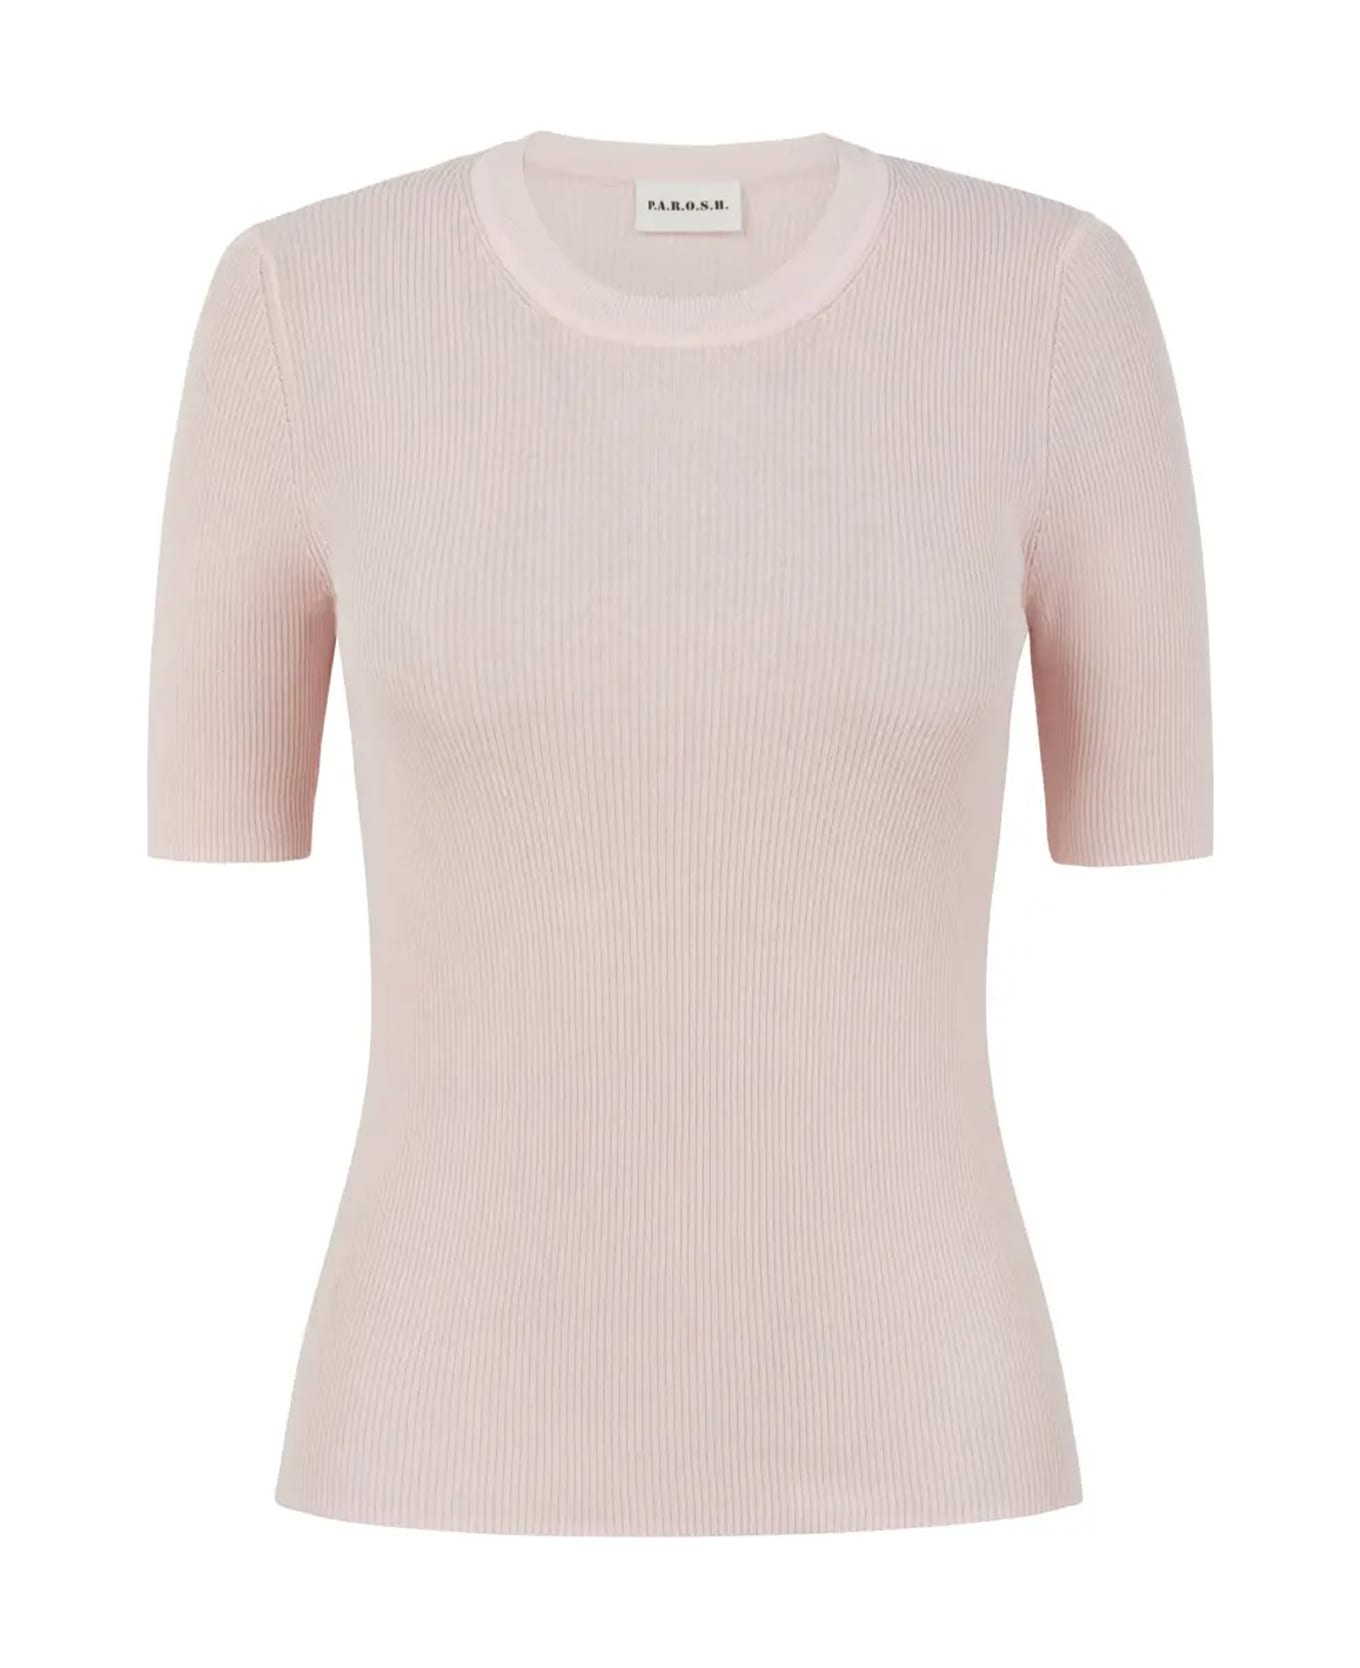 Parosh Pink Short-sleeved Shirt - ROSA